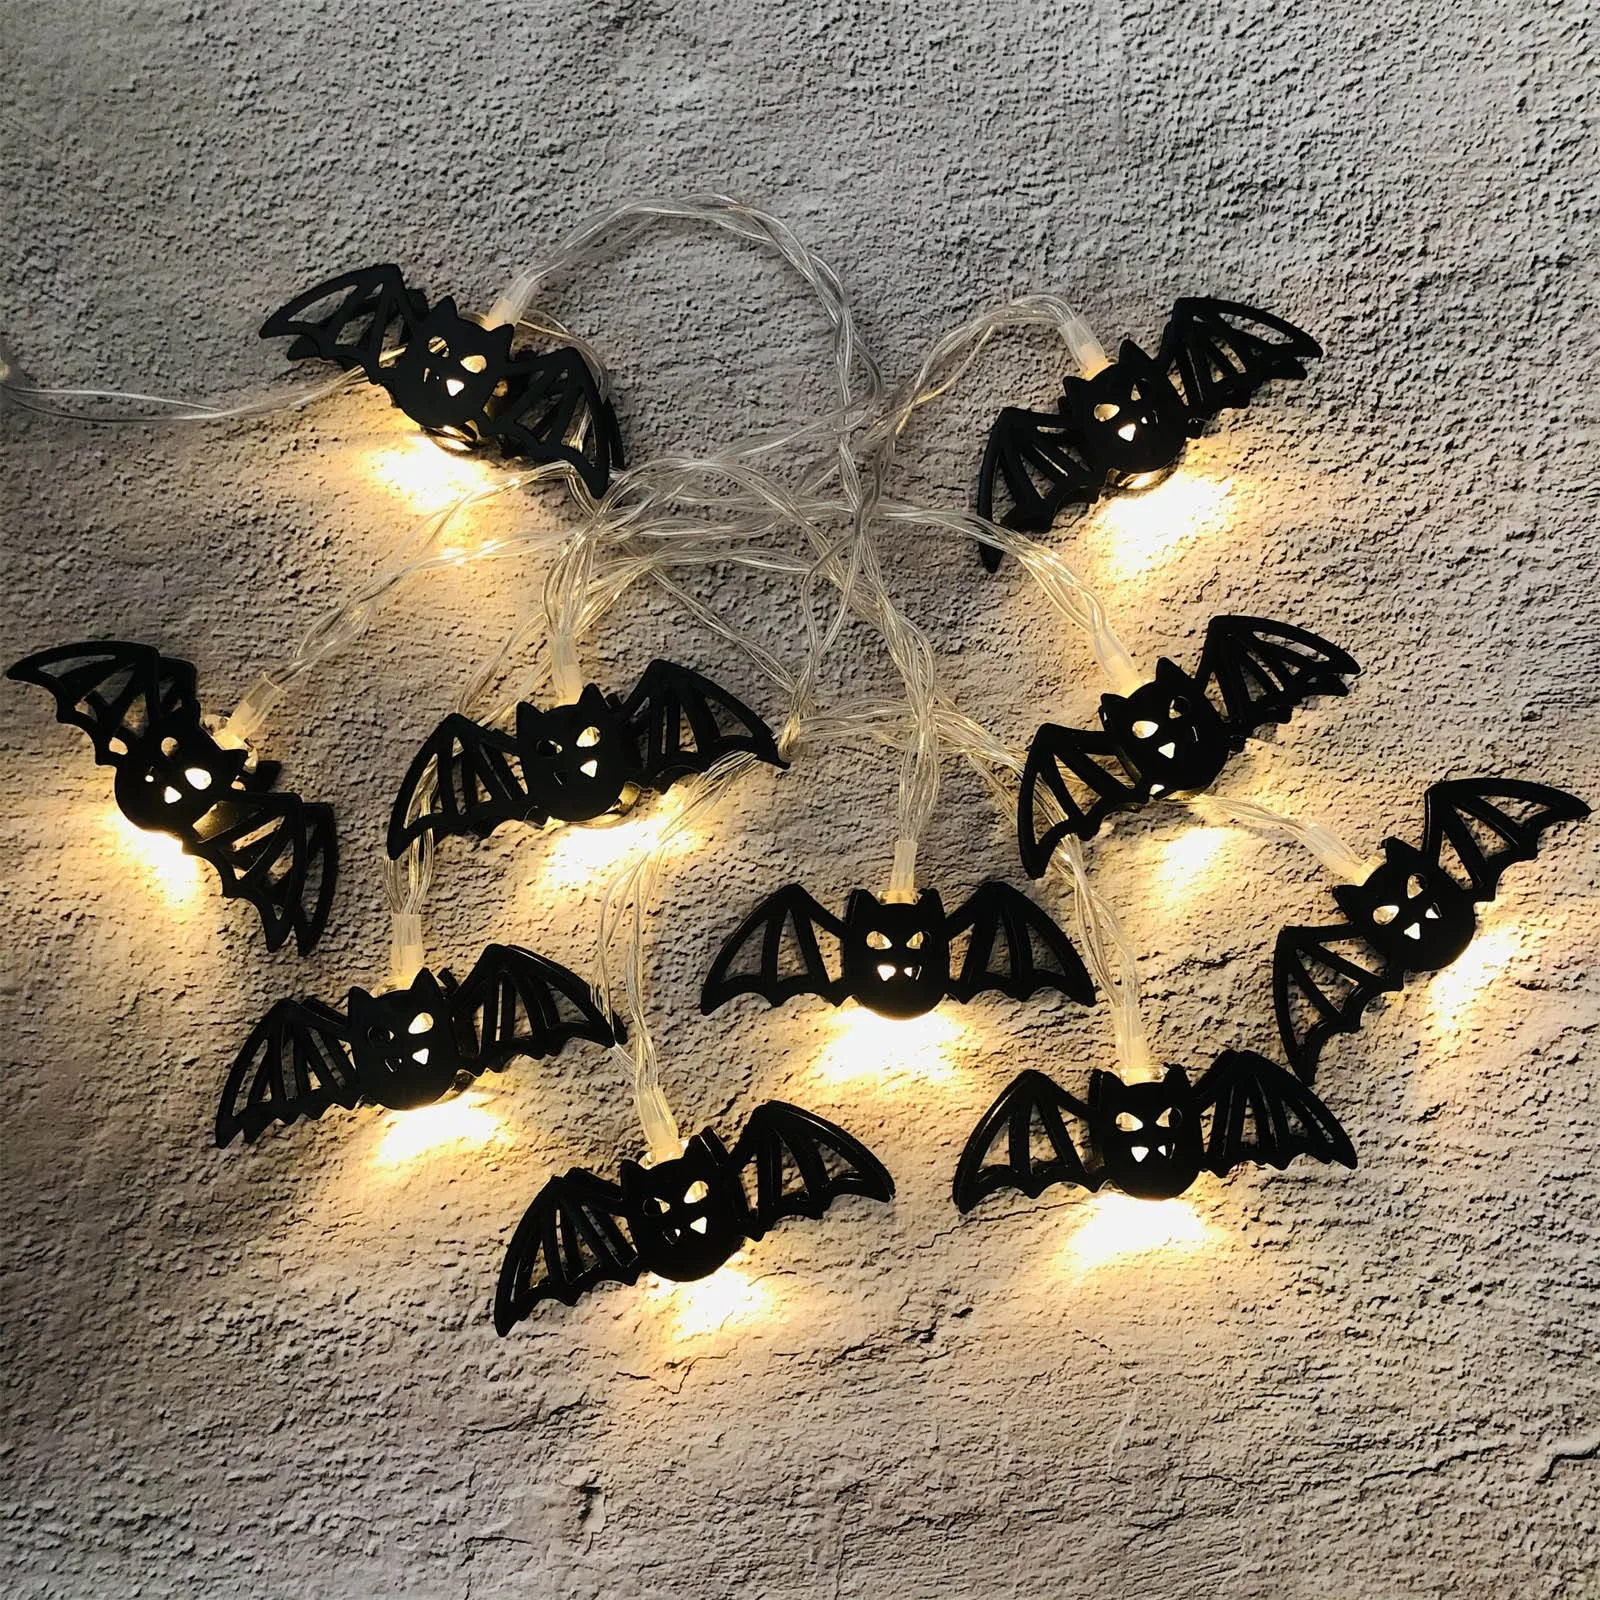 Фонари на Хэллоуин Декоративные фонари гирлянды на батарейках Светодиодные водонепроницаемые для заборов на заднем дворе, деревьев на крыльце для вечеринок